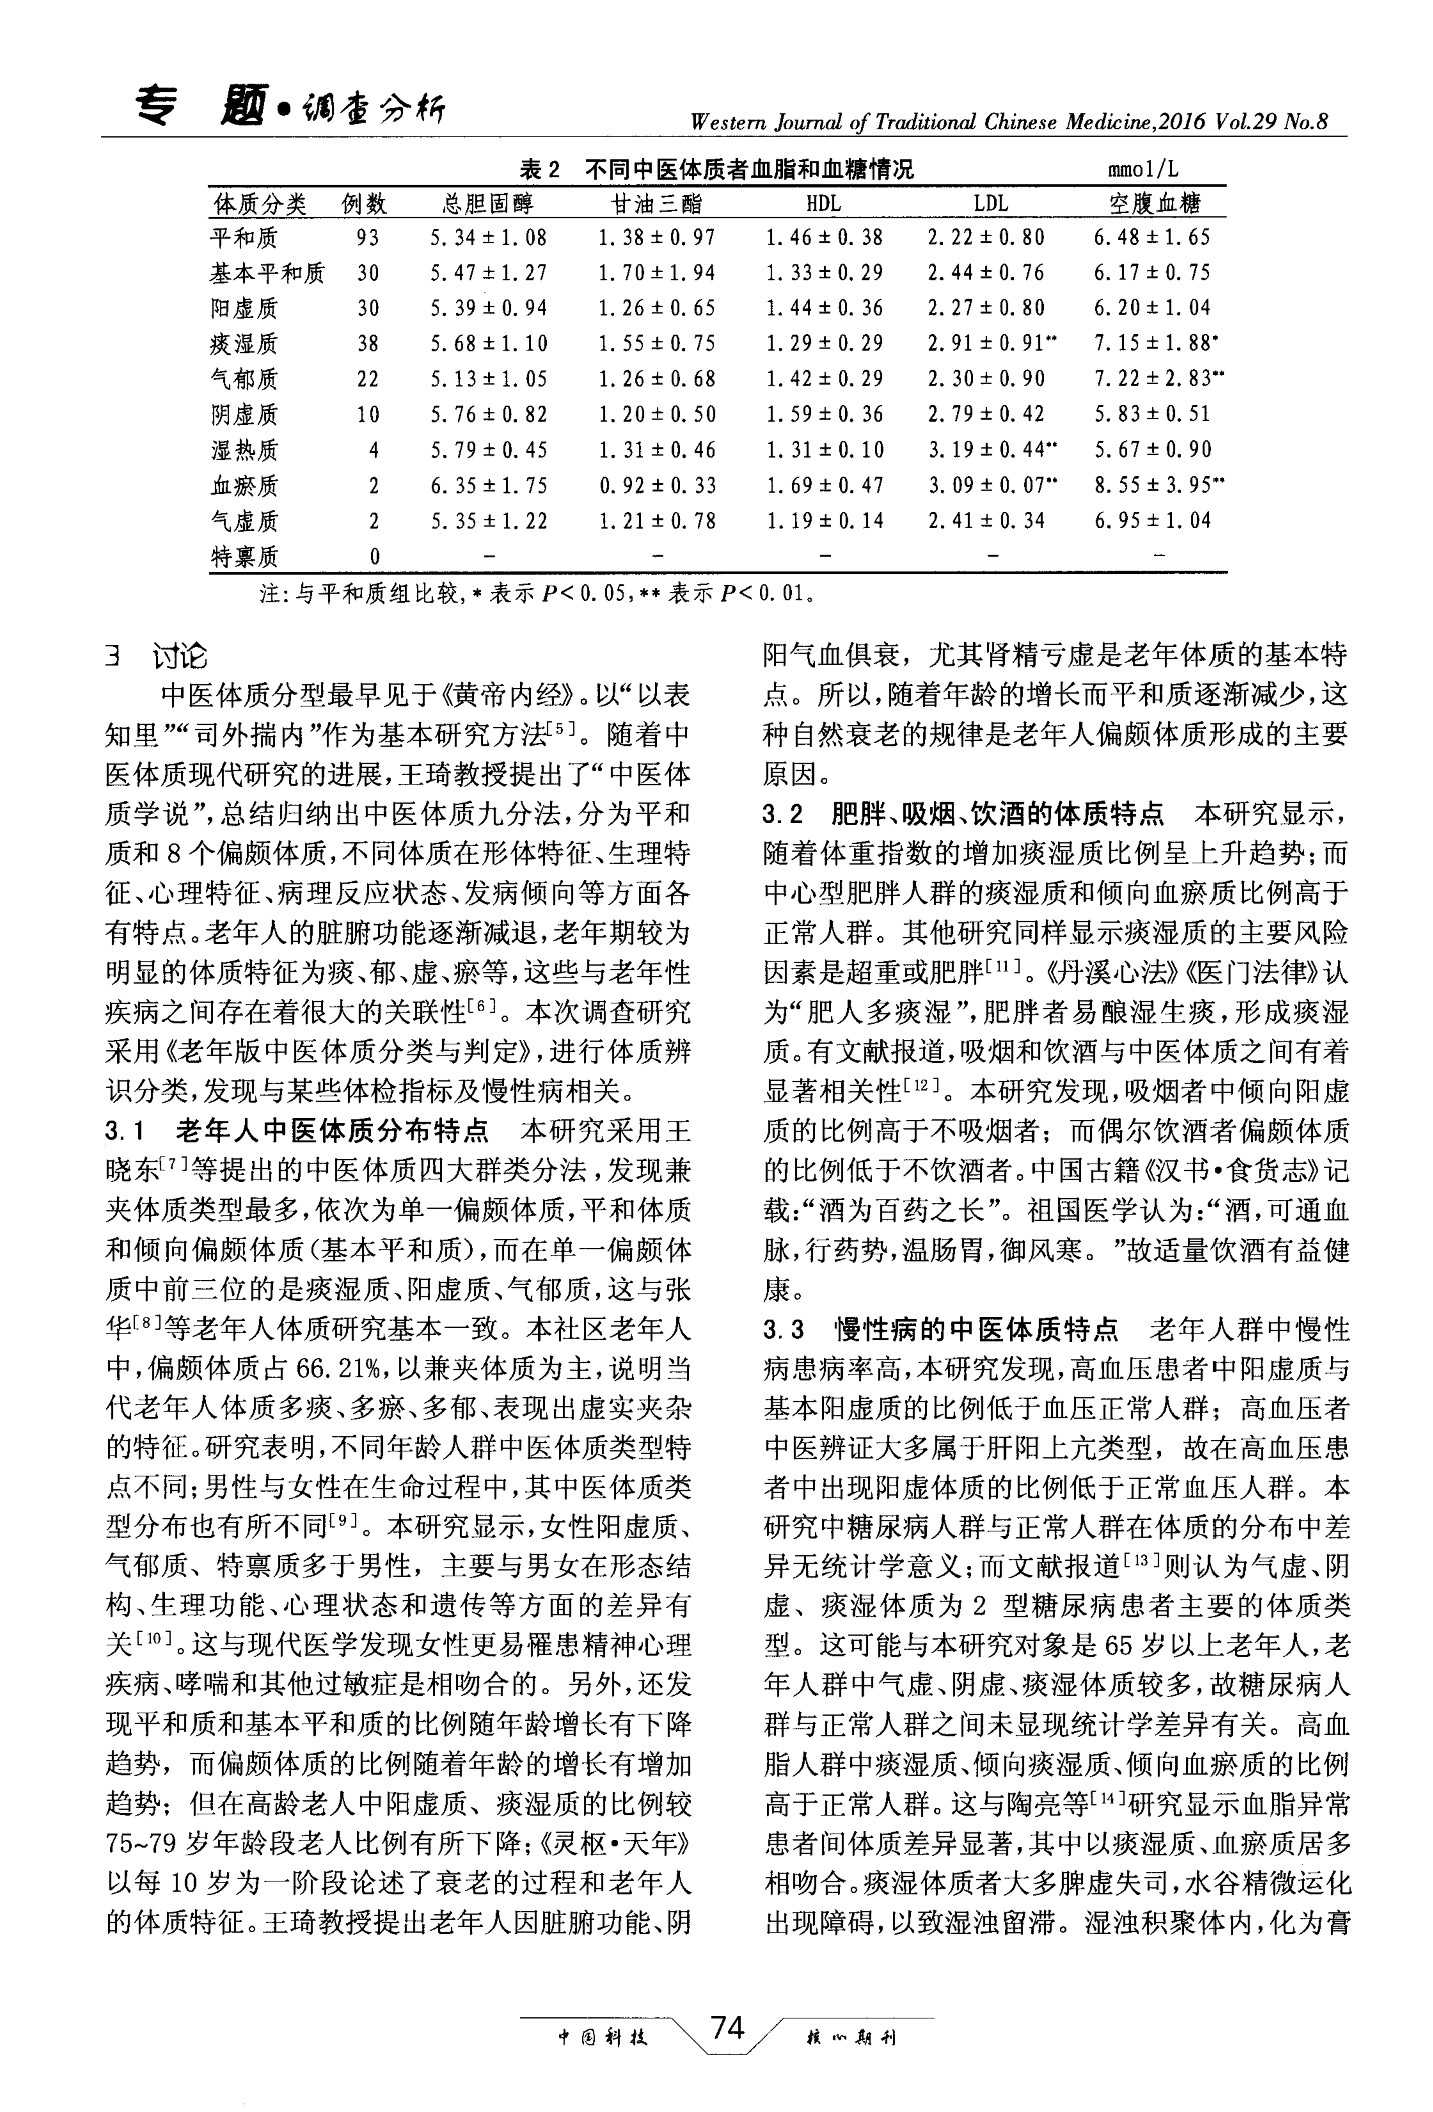 上海市某社区65岁以上老年人中医体质调查分析4.jpg